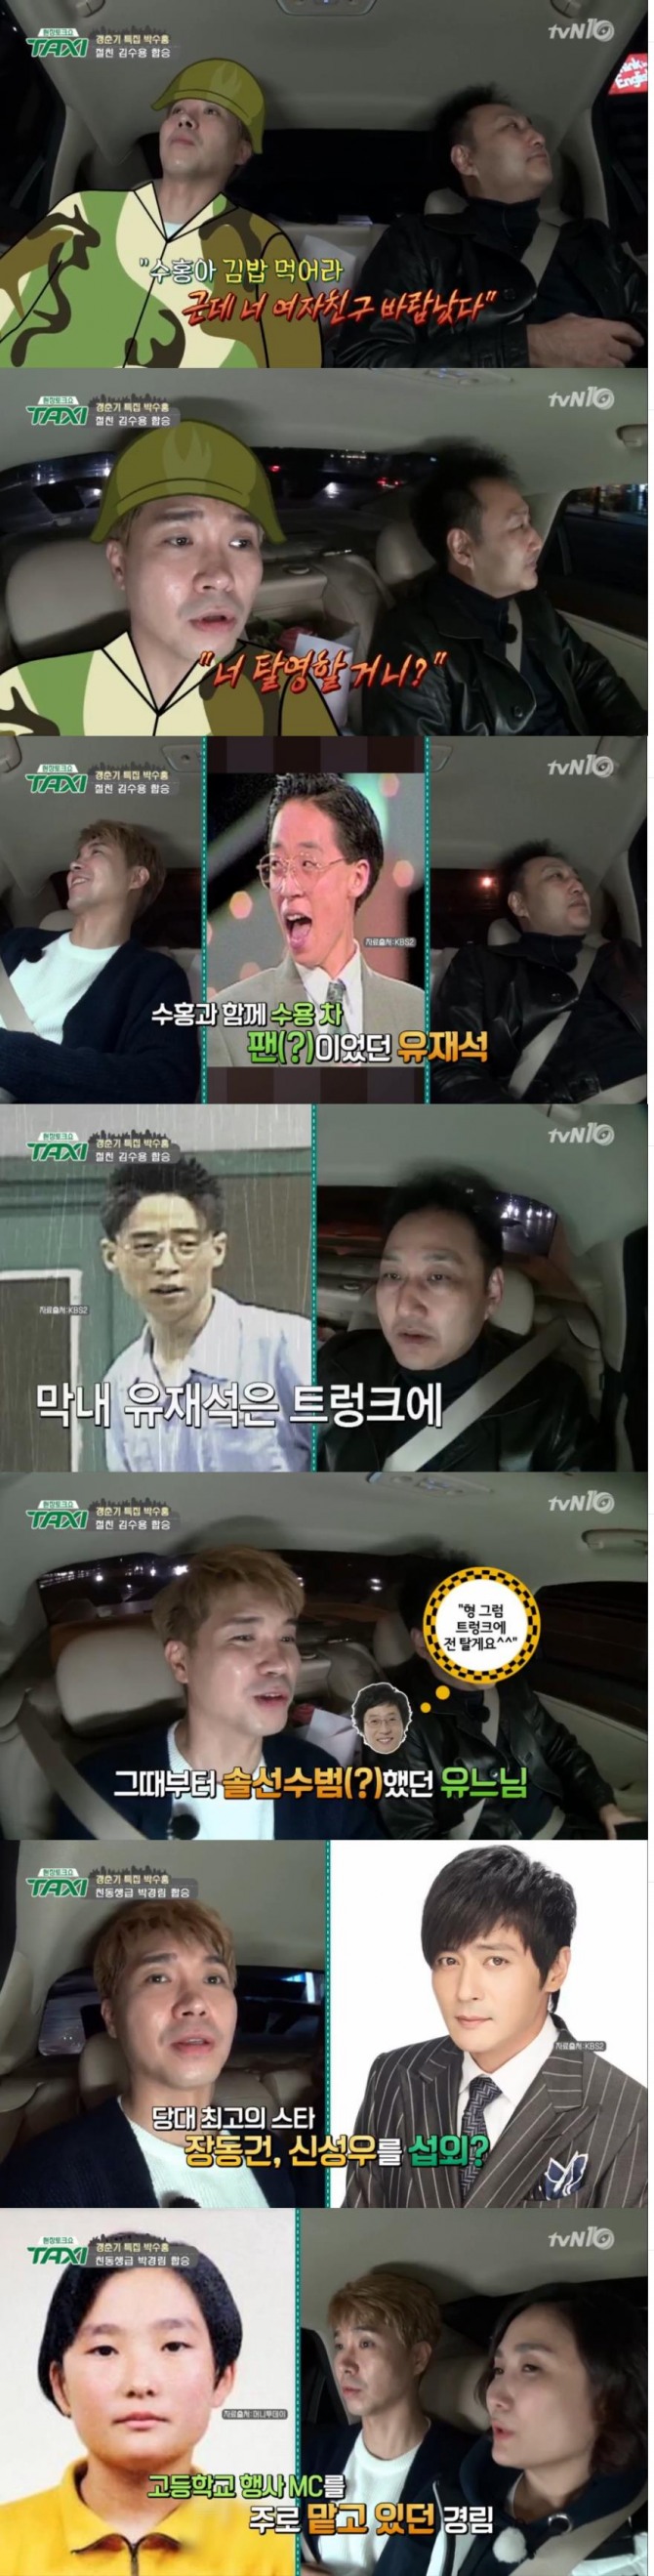 29일 방송된 tvN '현장토크쇼 택시'에서는 박수홍, 김수용, 박경림이 탑승해 입담을 뽐냈다./사진=tvN 방송 캡처